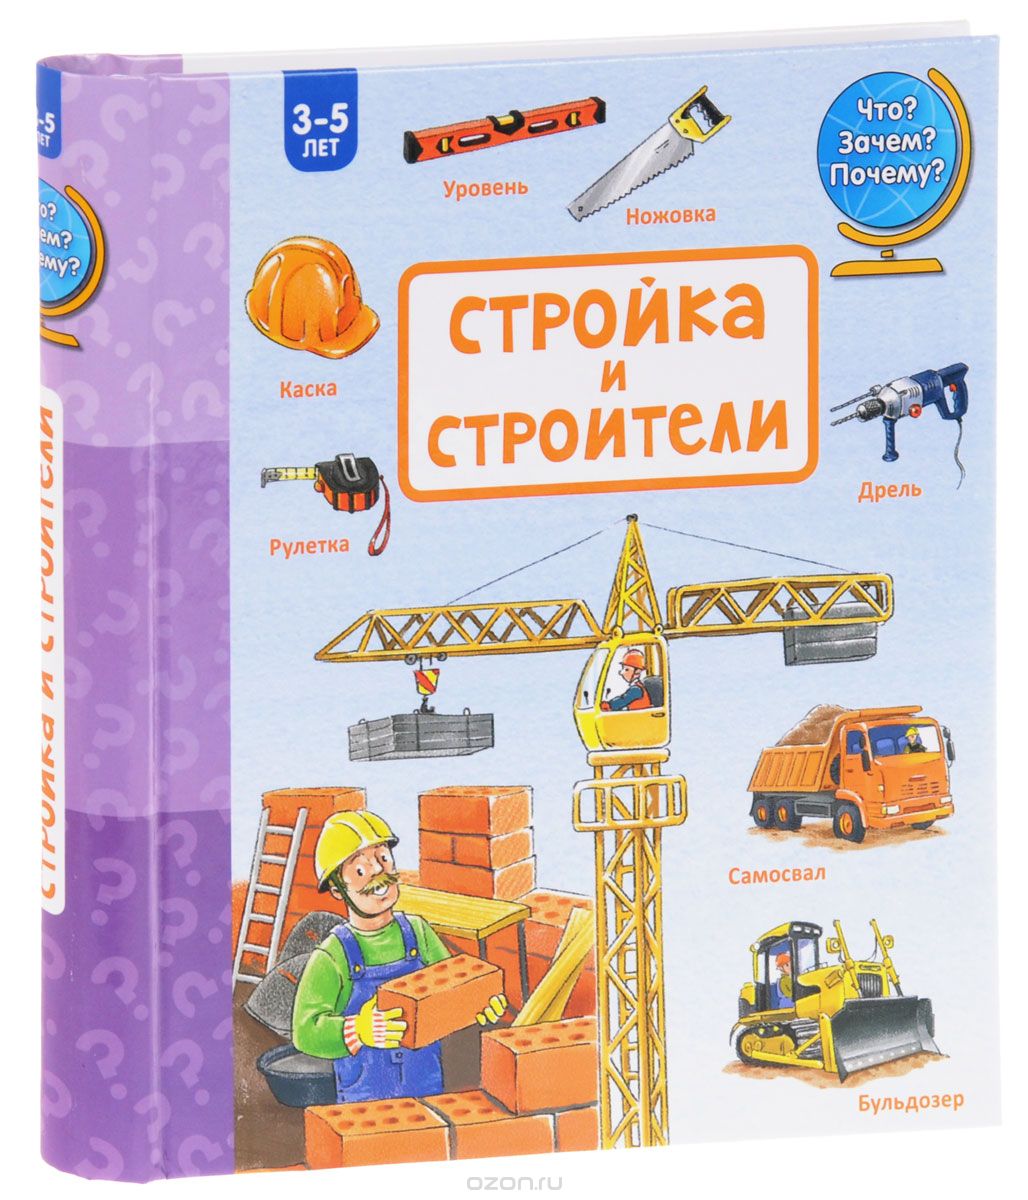 Скачать книгу "Стройка и строители, Наталья Зайцева"